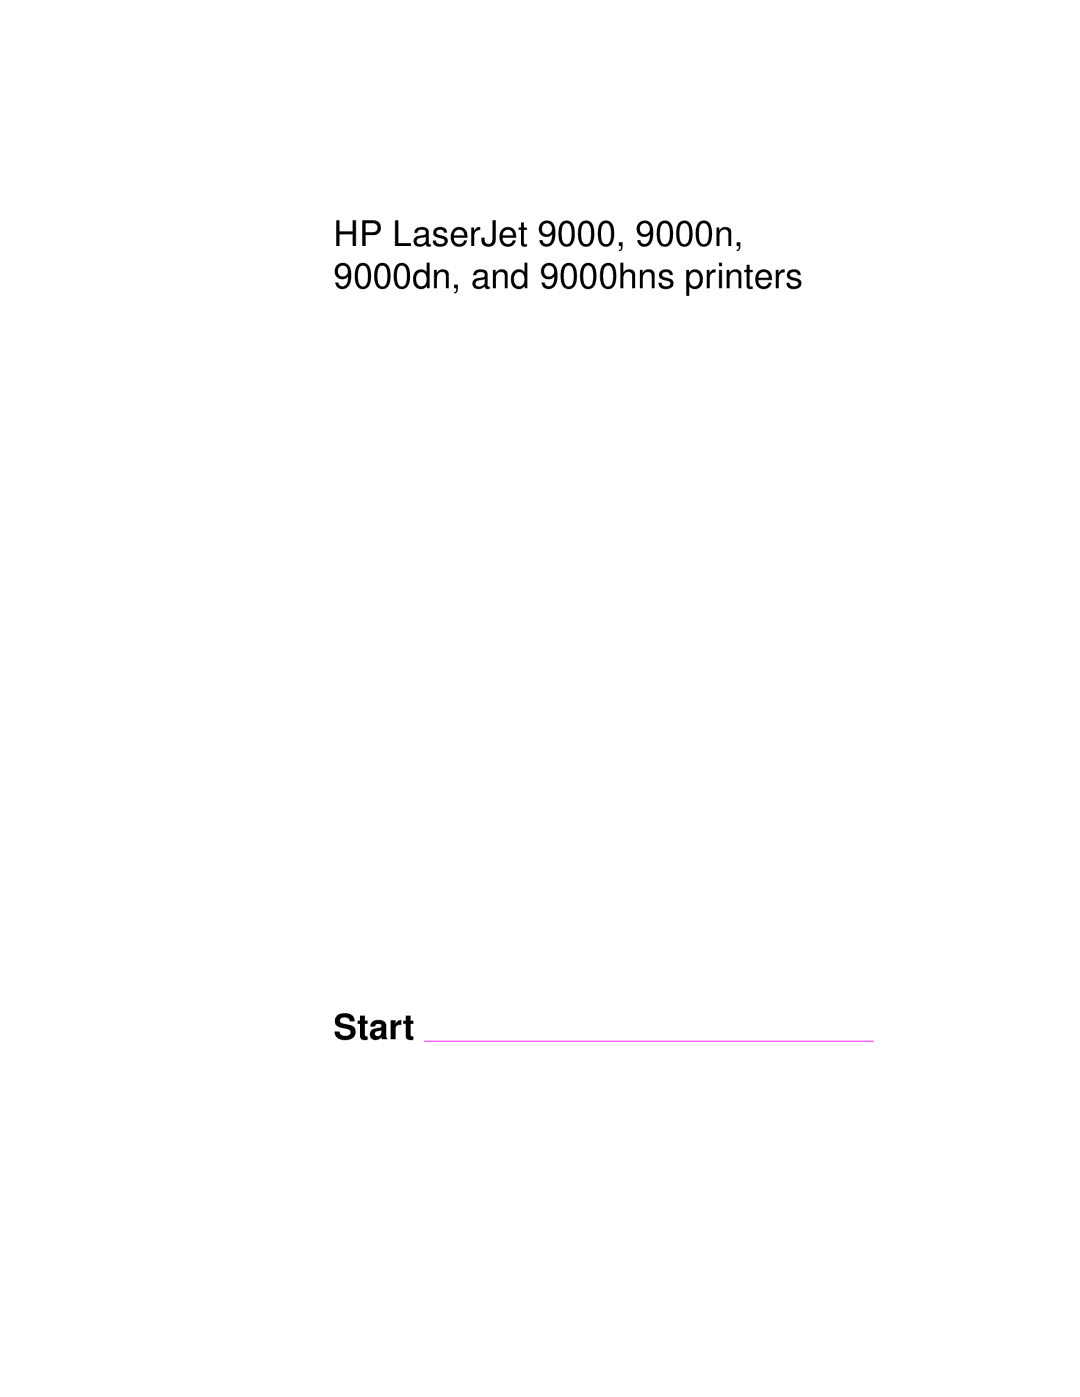 HP 9000n, 9000hns, 9000dn manual Start 